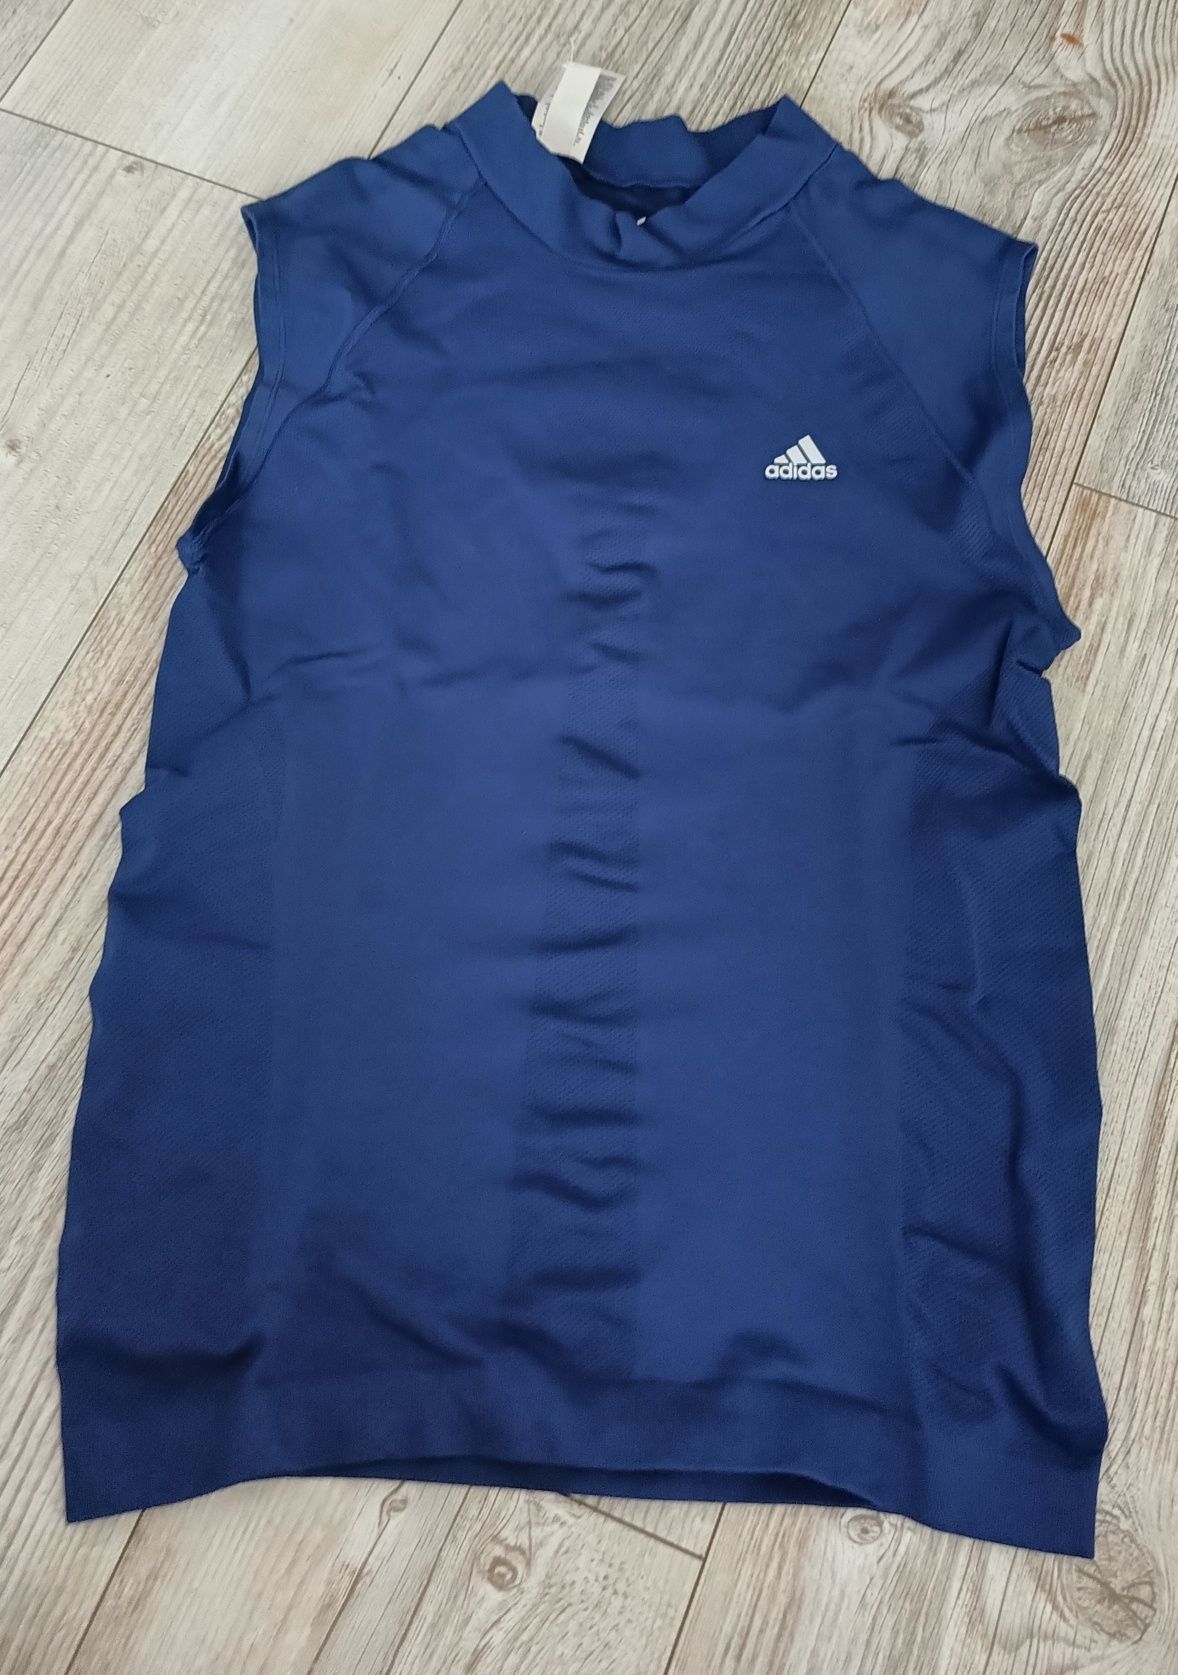 J.nowa koszulka termiczna termo Adidas climacool r. XL